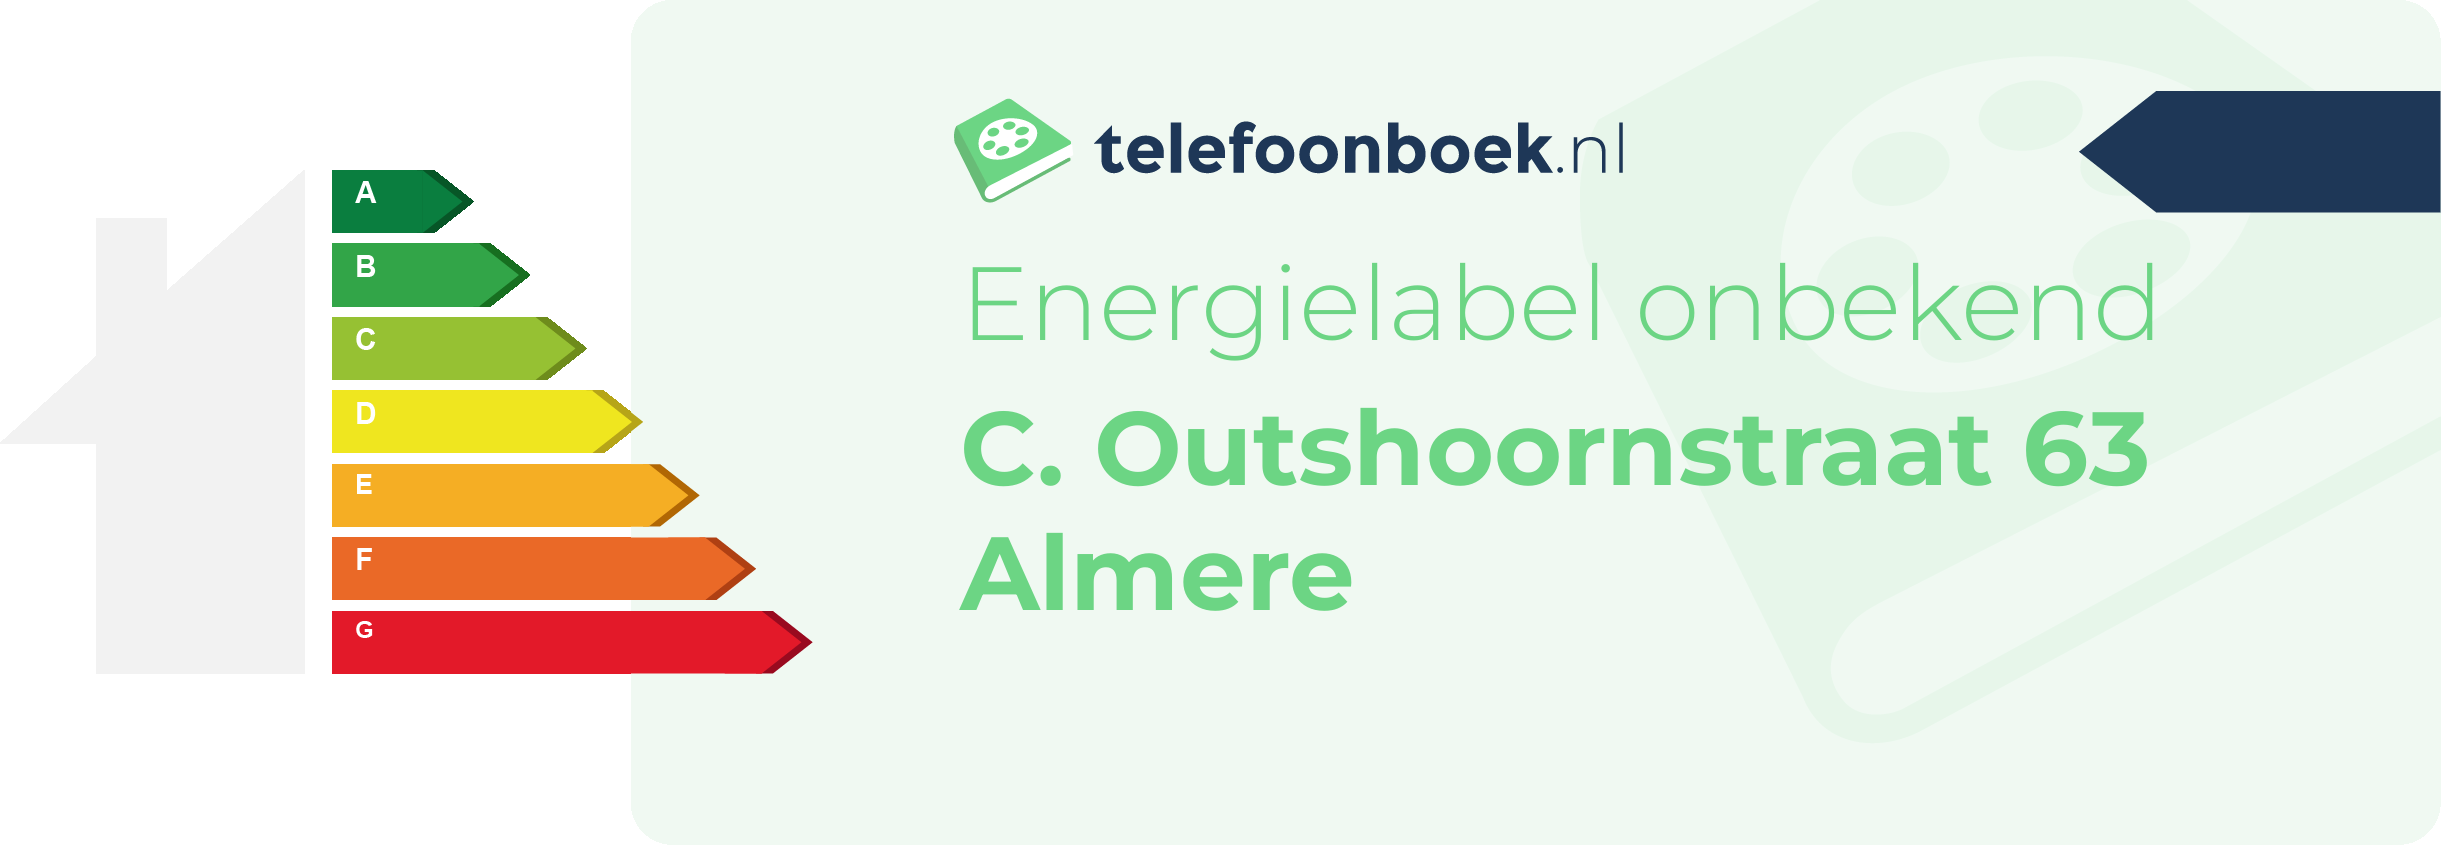 Energielabel C. Outshoornstraat 63 Almere